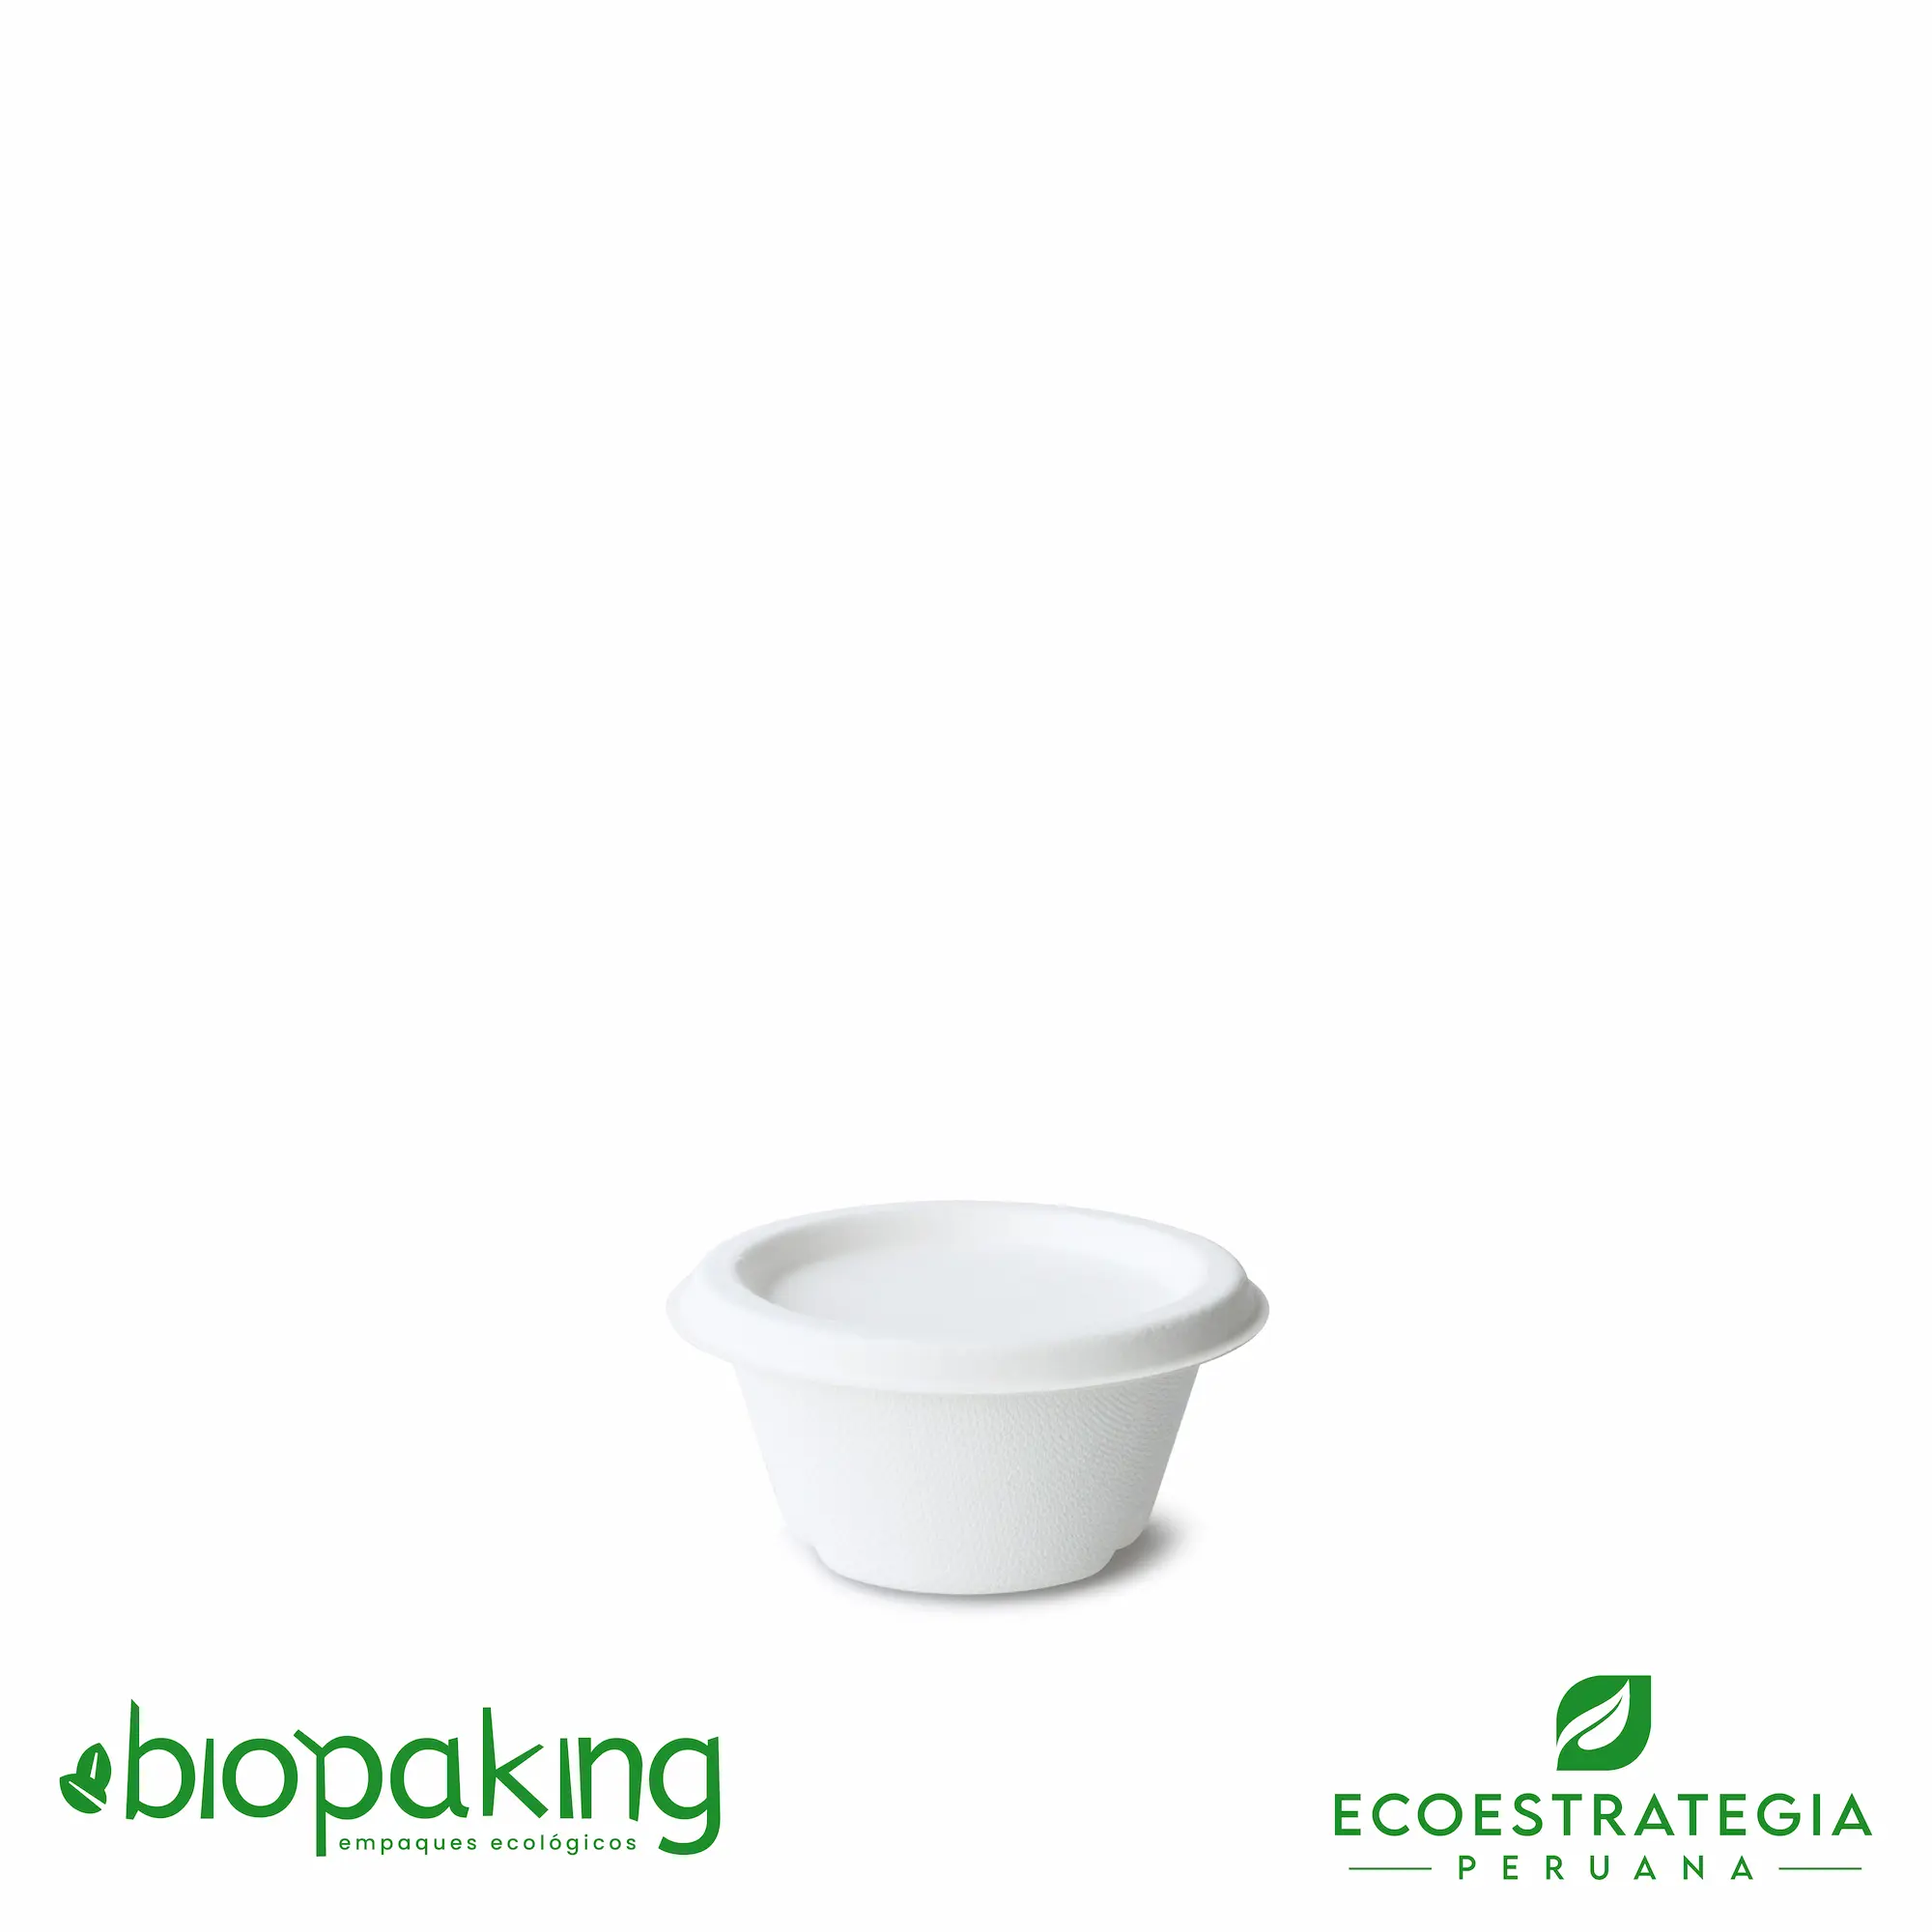 Este envase para cremas de 2oz, es un productos de material biodegradable hecho a base del bagazo de caña de azúcar. Cotiza tus ajiceros, salseros y pirotines.